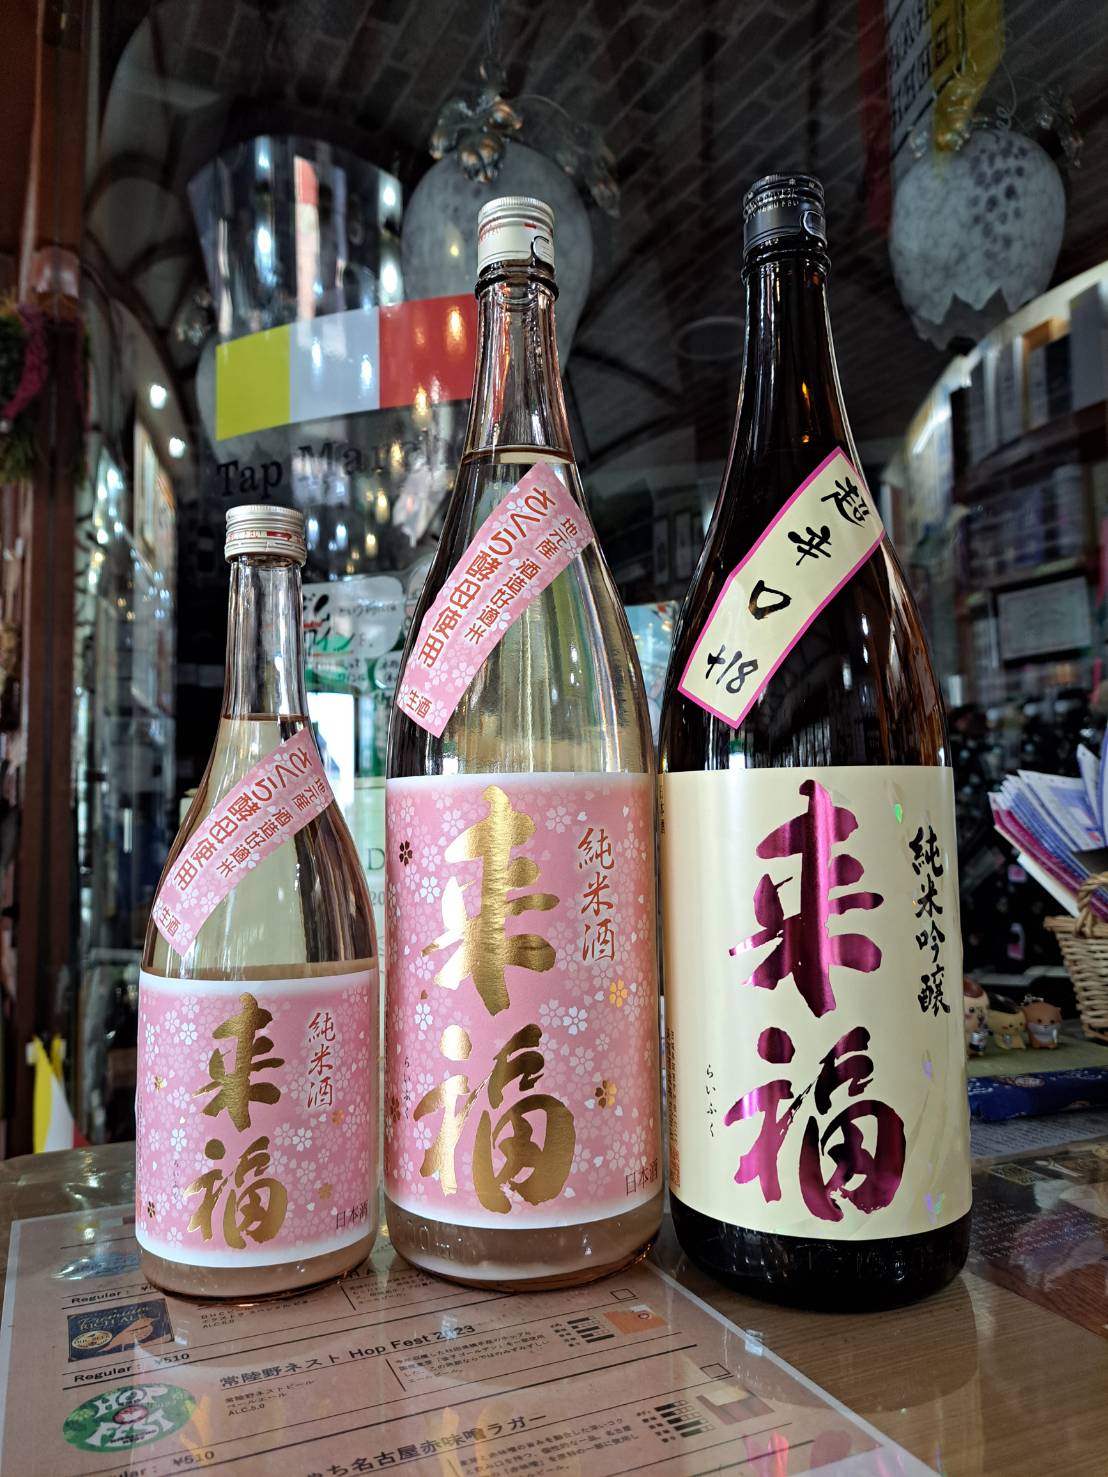 『茨城県の来福酒造さんから、さくらの花酵母で造ったお酒と大人気の超辛口が入荷しました』